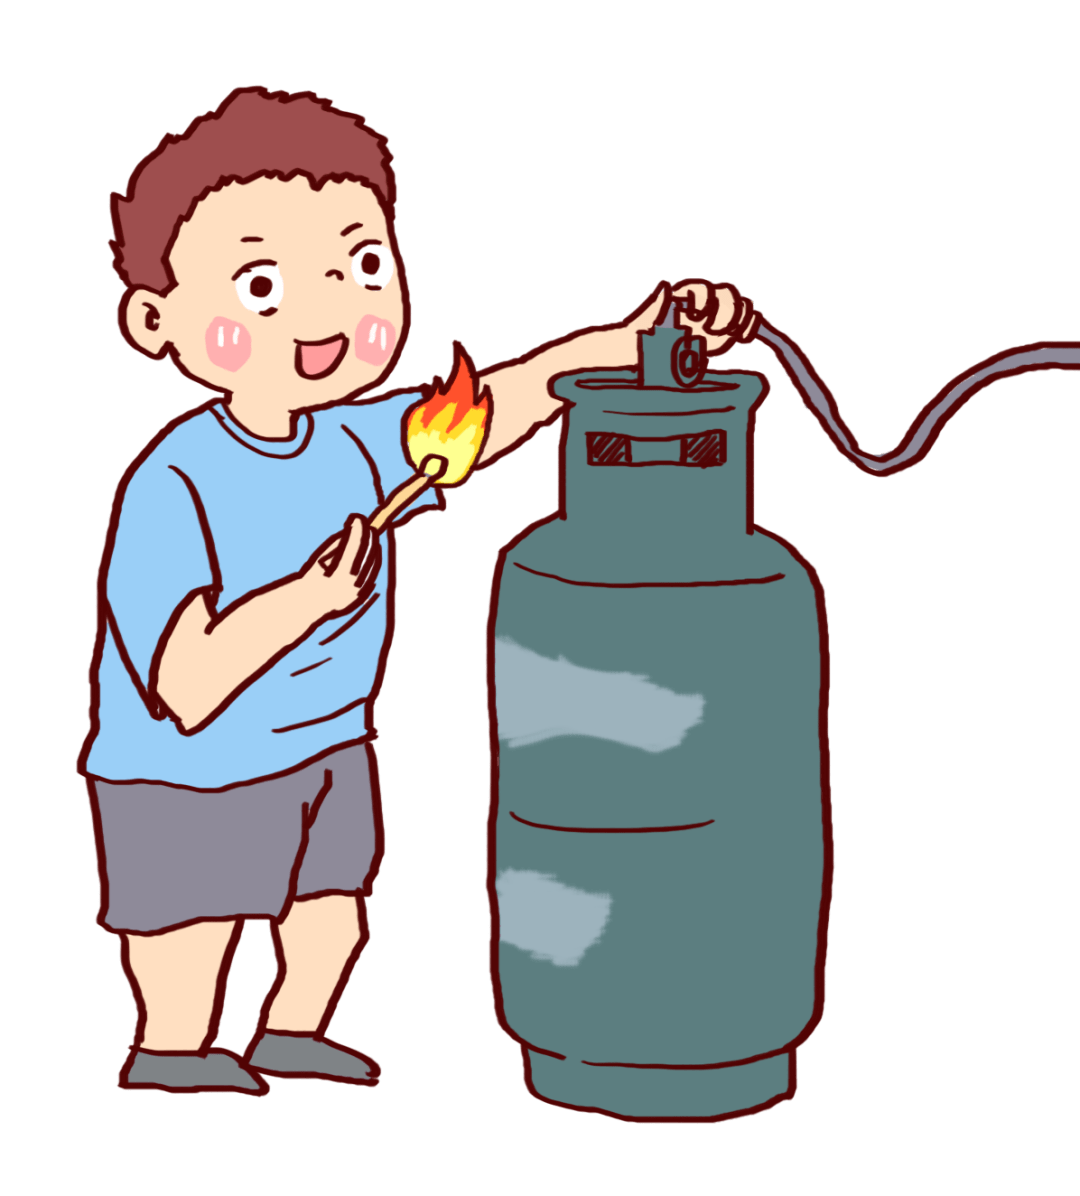 煤气瓶漫画图片